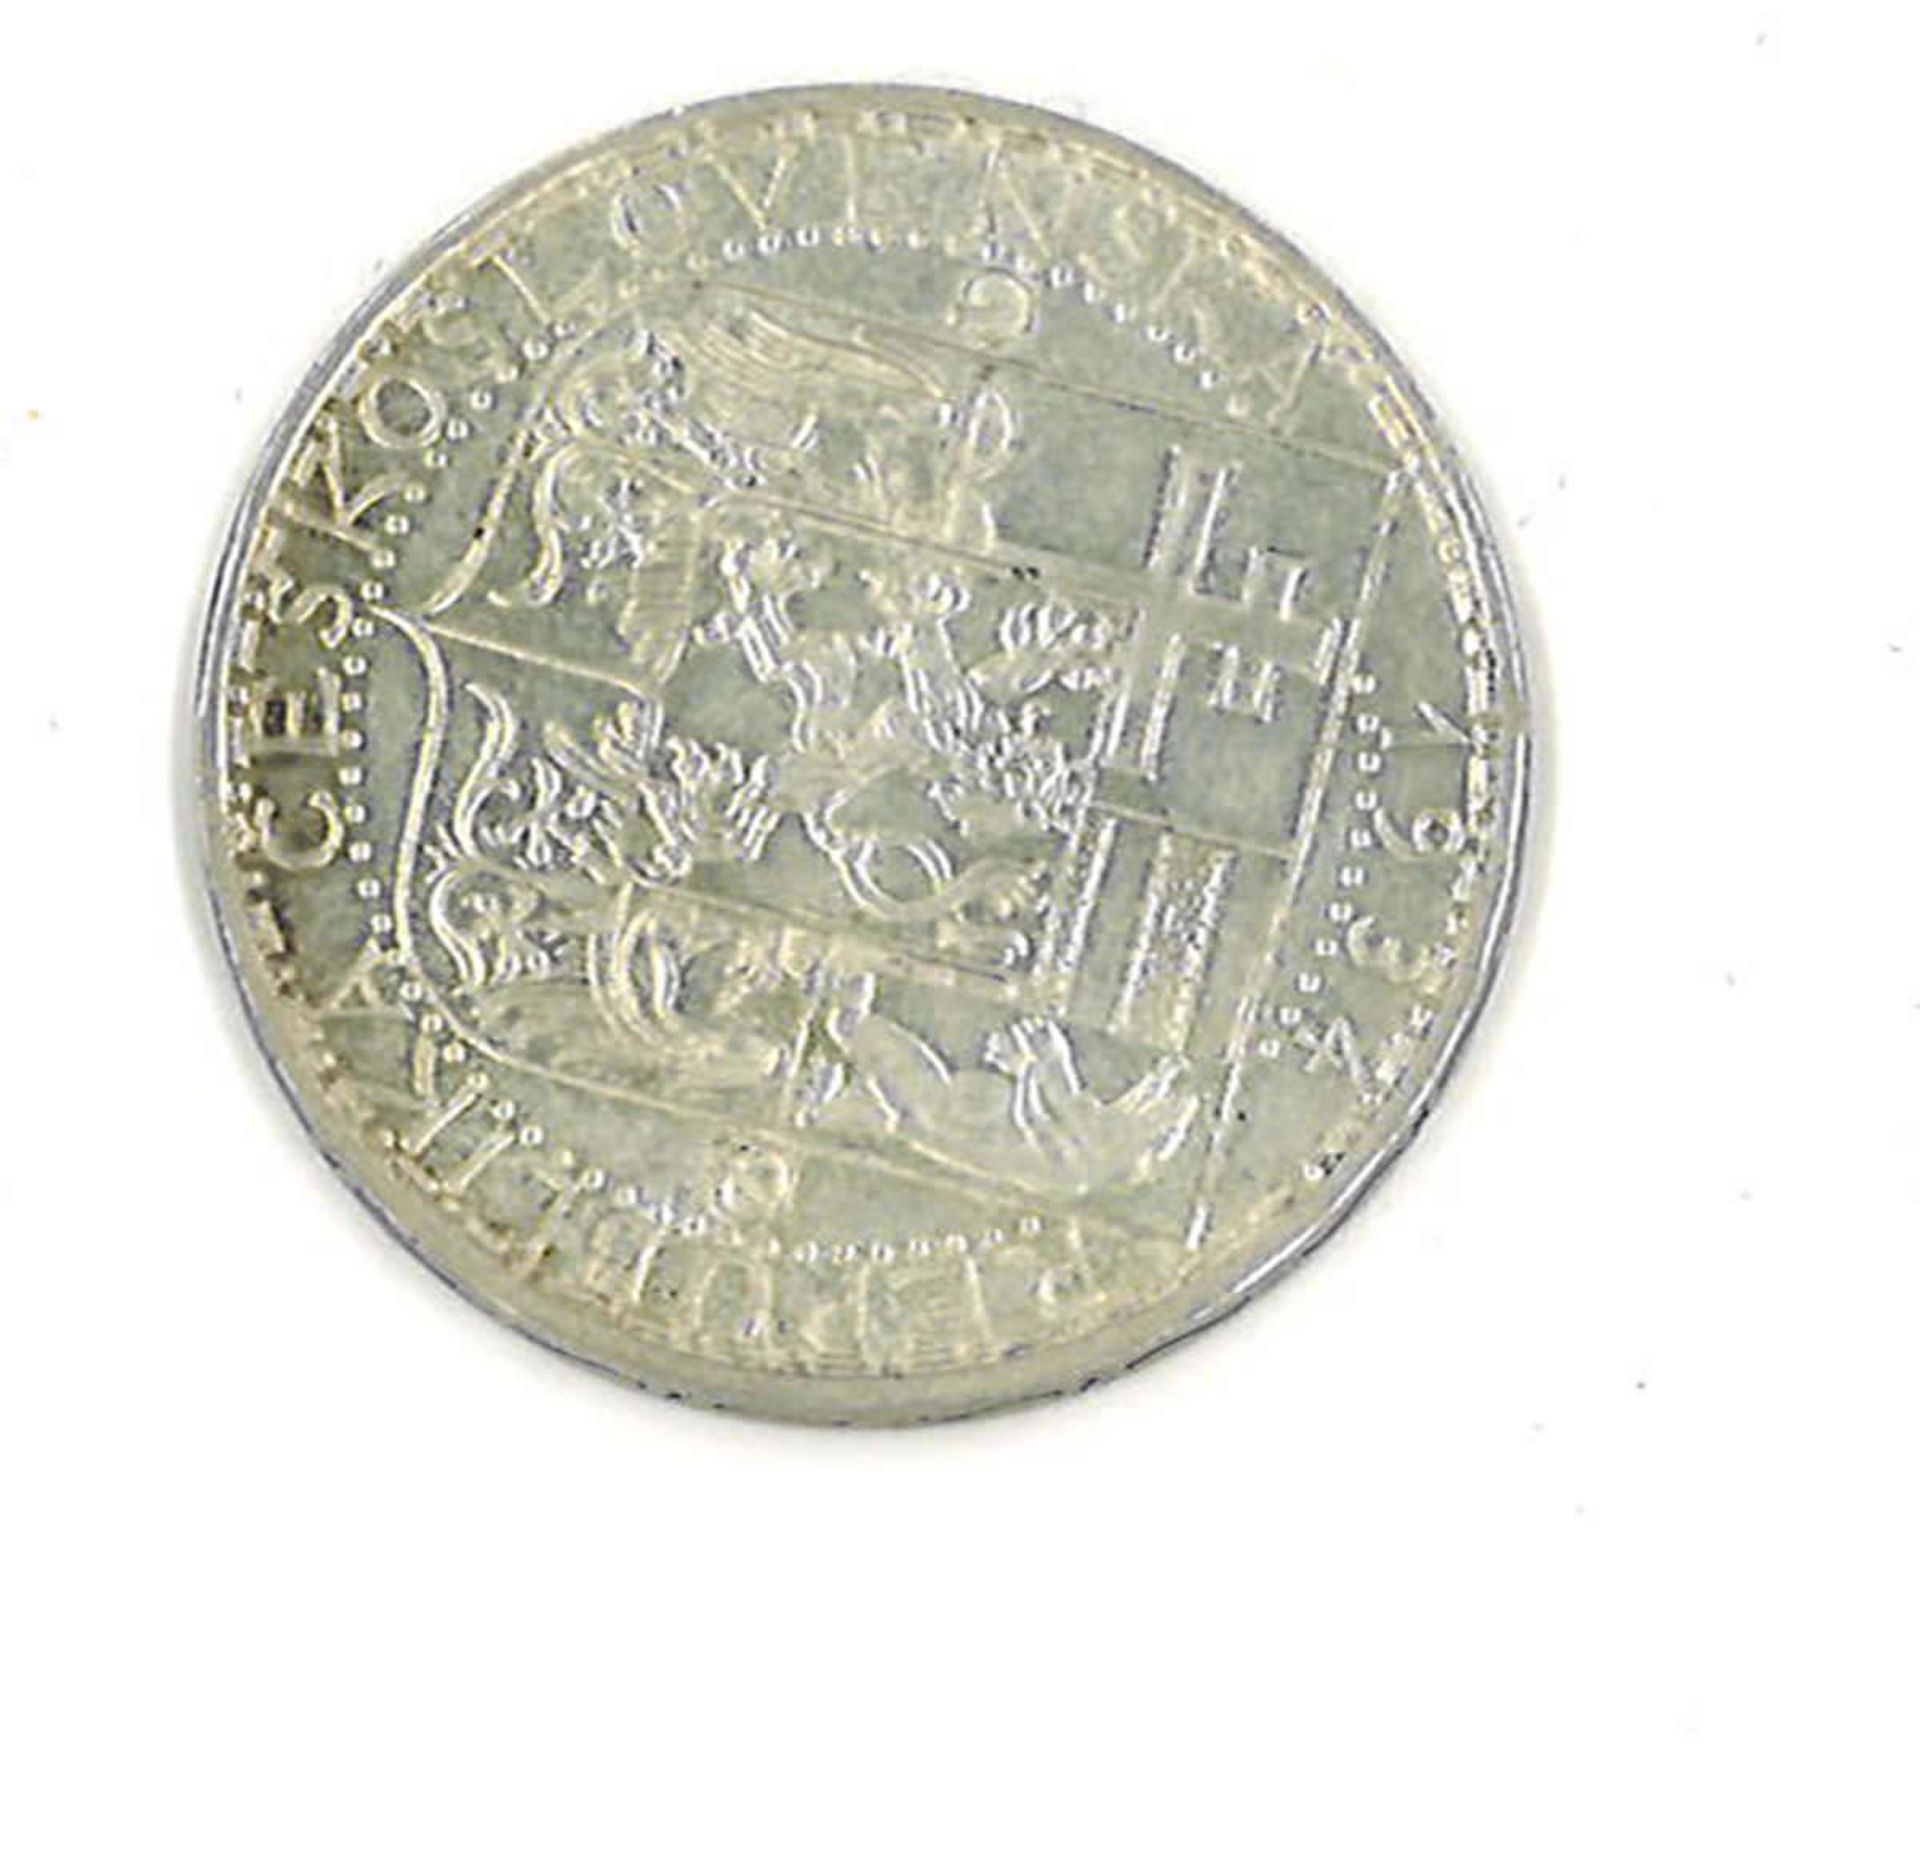 Tschechische Republik 1934, Silbermünze. 20 KronenCzech Republic 1934, silver coin. 20 crowns - Image 2 of 2